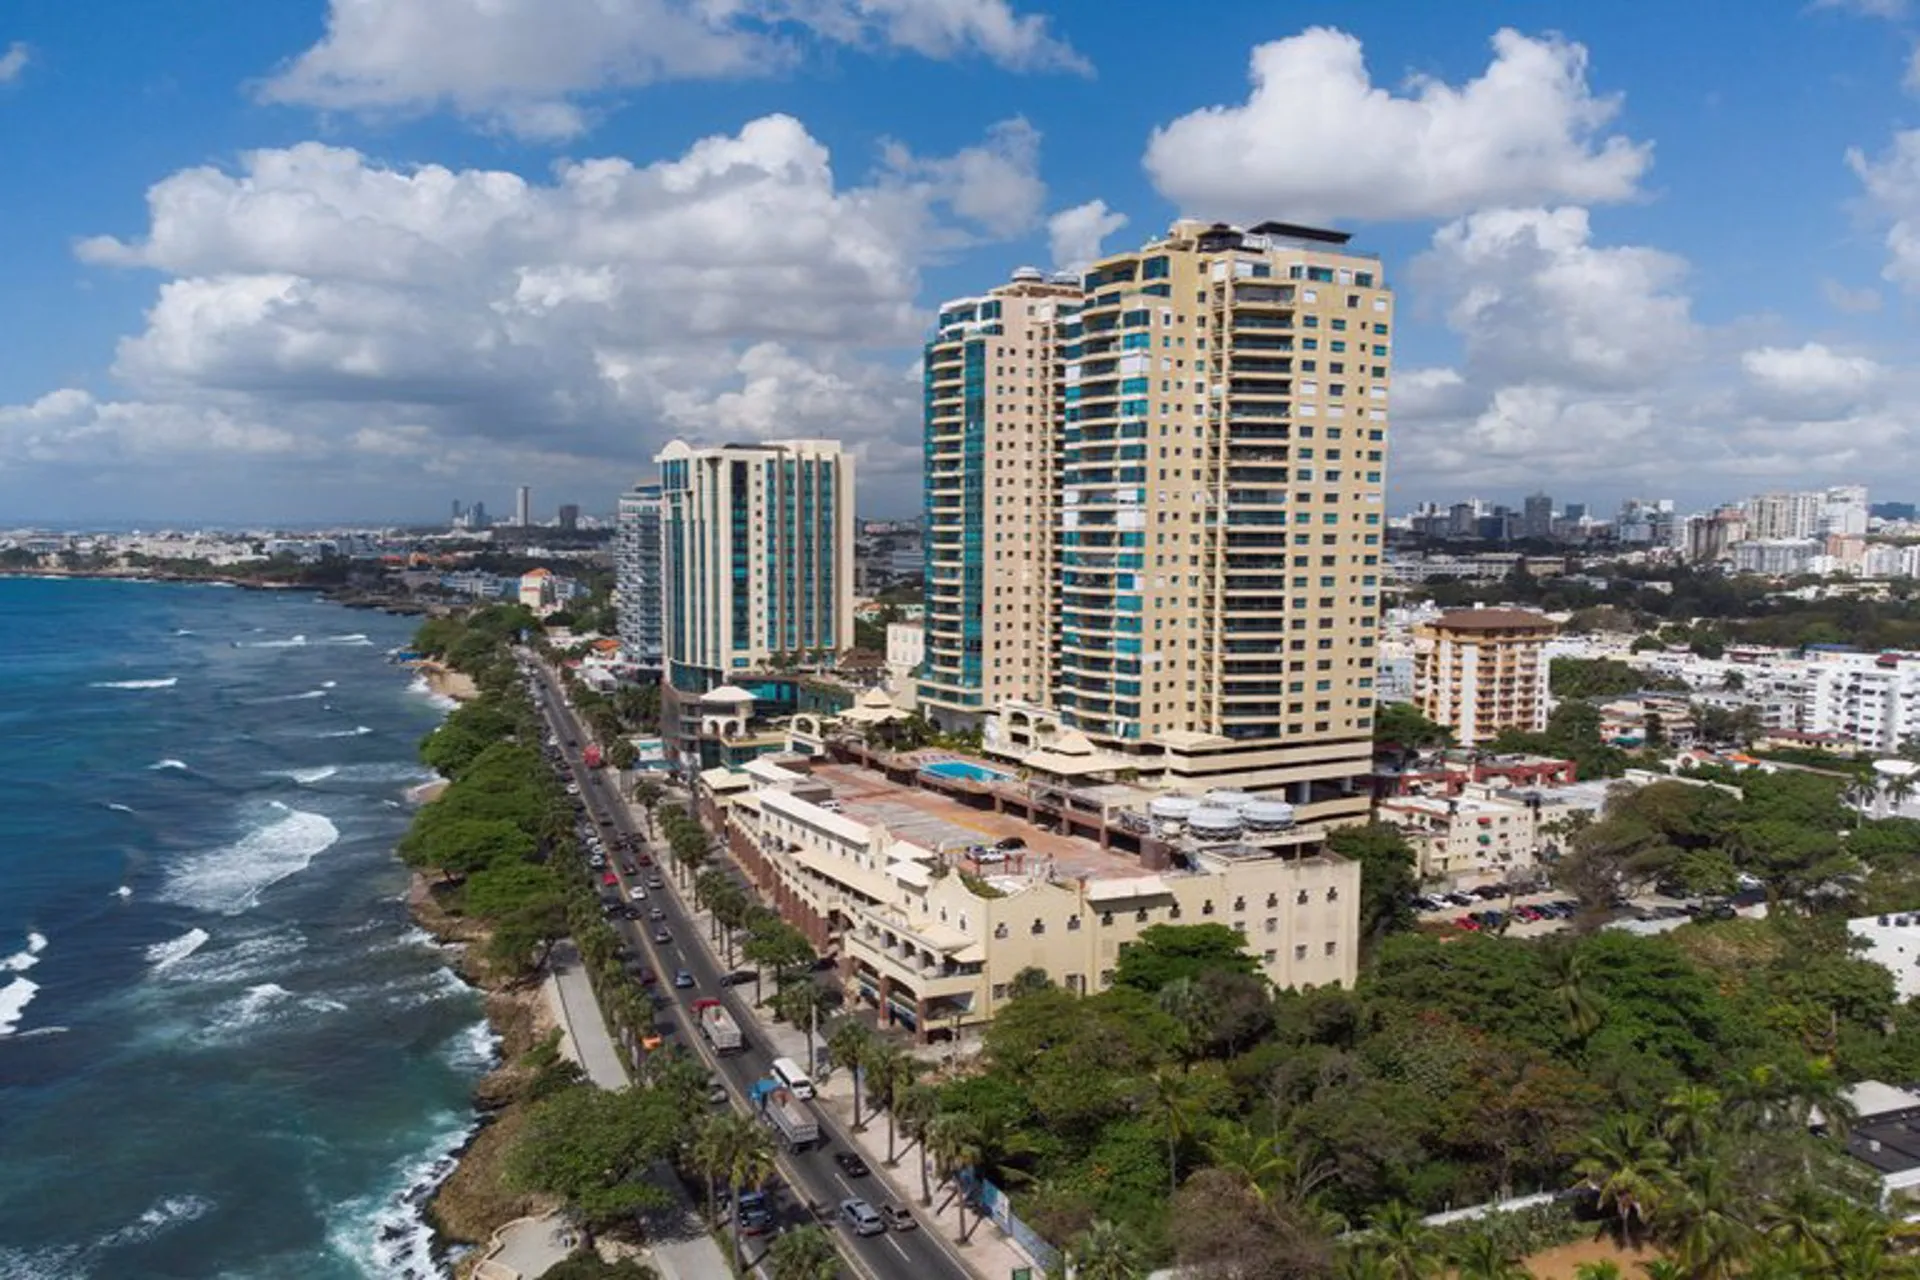 Hoteleros Españoles invertirán USD 580 millones en Rep Dominicana